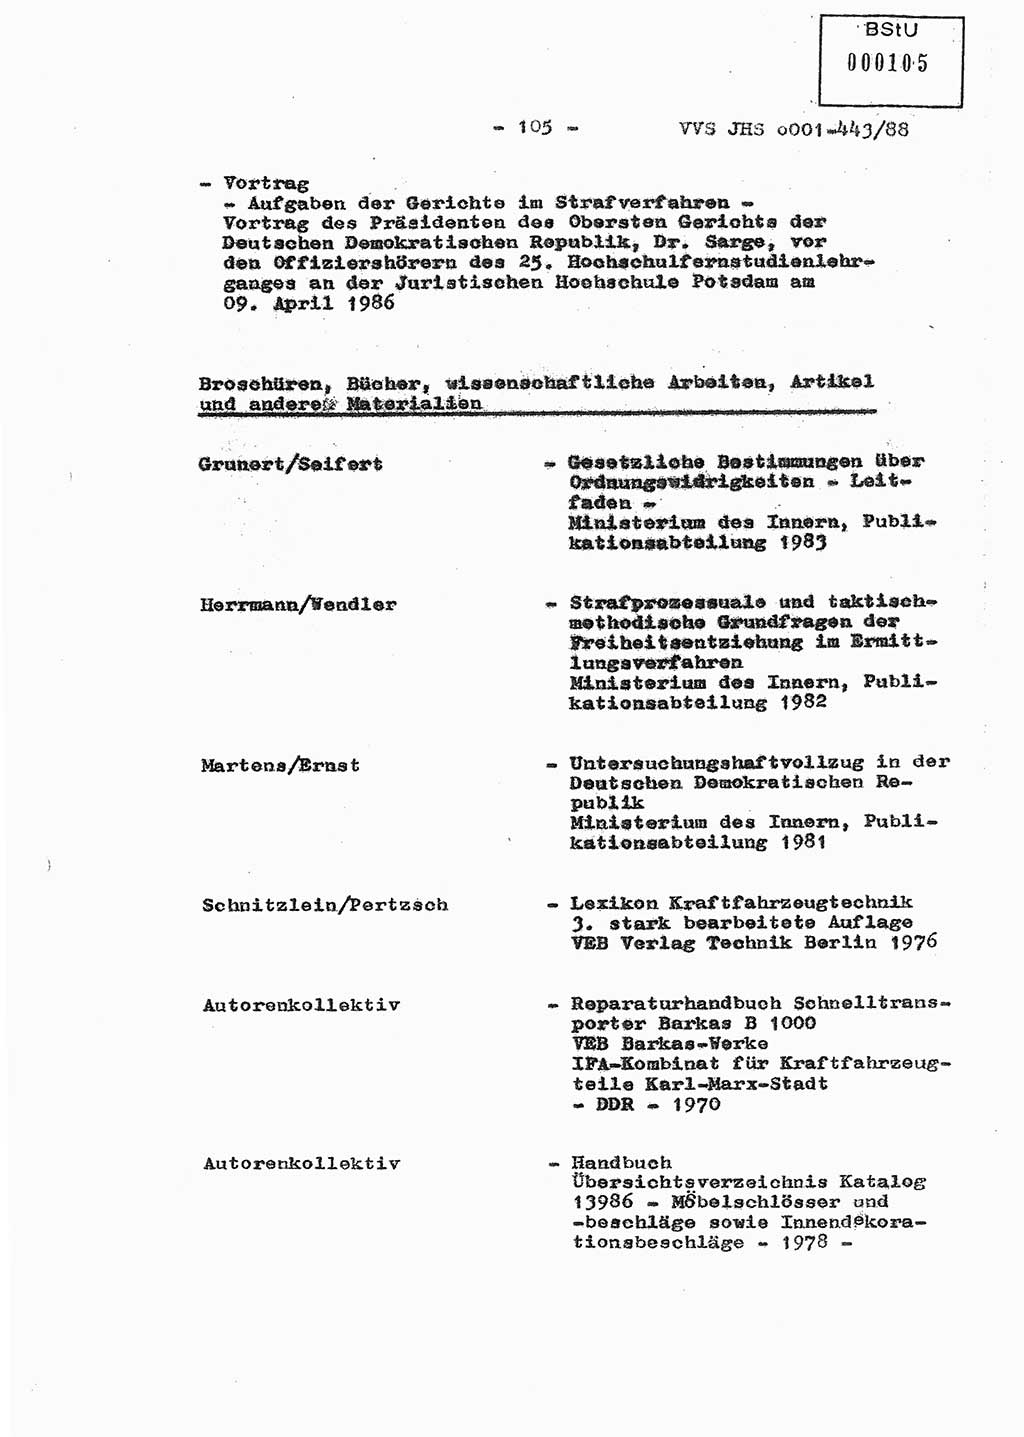 Diplomarbeit Hauptmann Michael Rast (Abt. ⅩⅣ), Major Bernd Rahaus (Abt. ⅩⅣ), Ministerium für Staatssicherheit (MfS) [Deutsche Demokratische Republik (DDR)], Juristische Hochschule (JHS), Vertrauliche Verschlußsache (VVS) o001-443/88, Potsdam 1988, Seite 105 (Dipl.-Arb. MfS DDR JHS VVS o001-443/88 1988, S. 105)